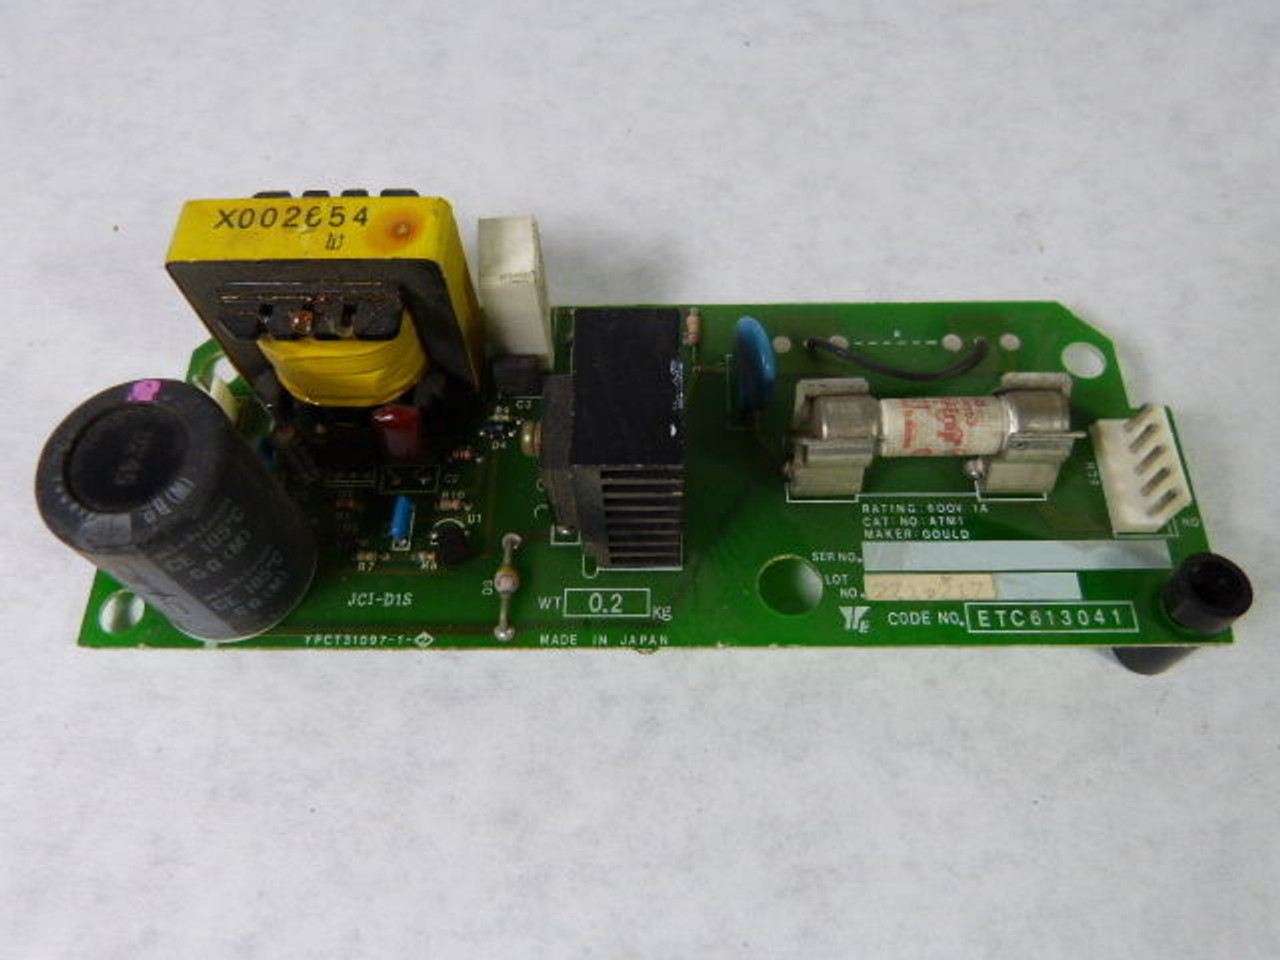 Yaskawa YPCT31097-1-2 Control Circuit Board USED